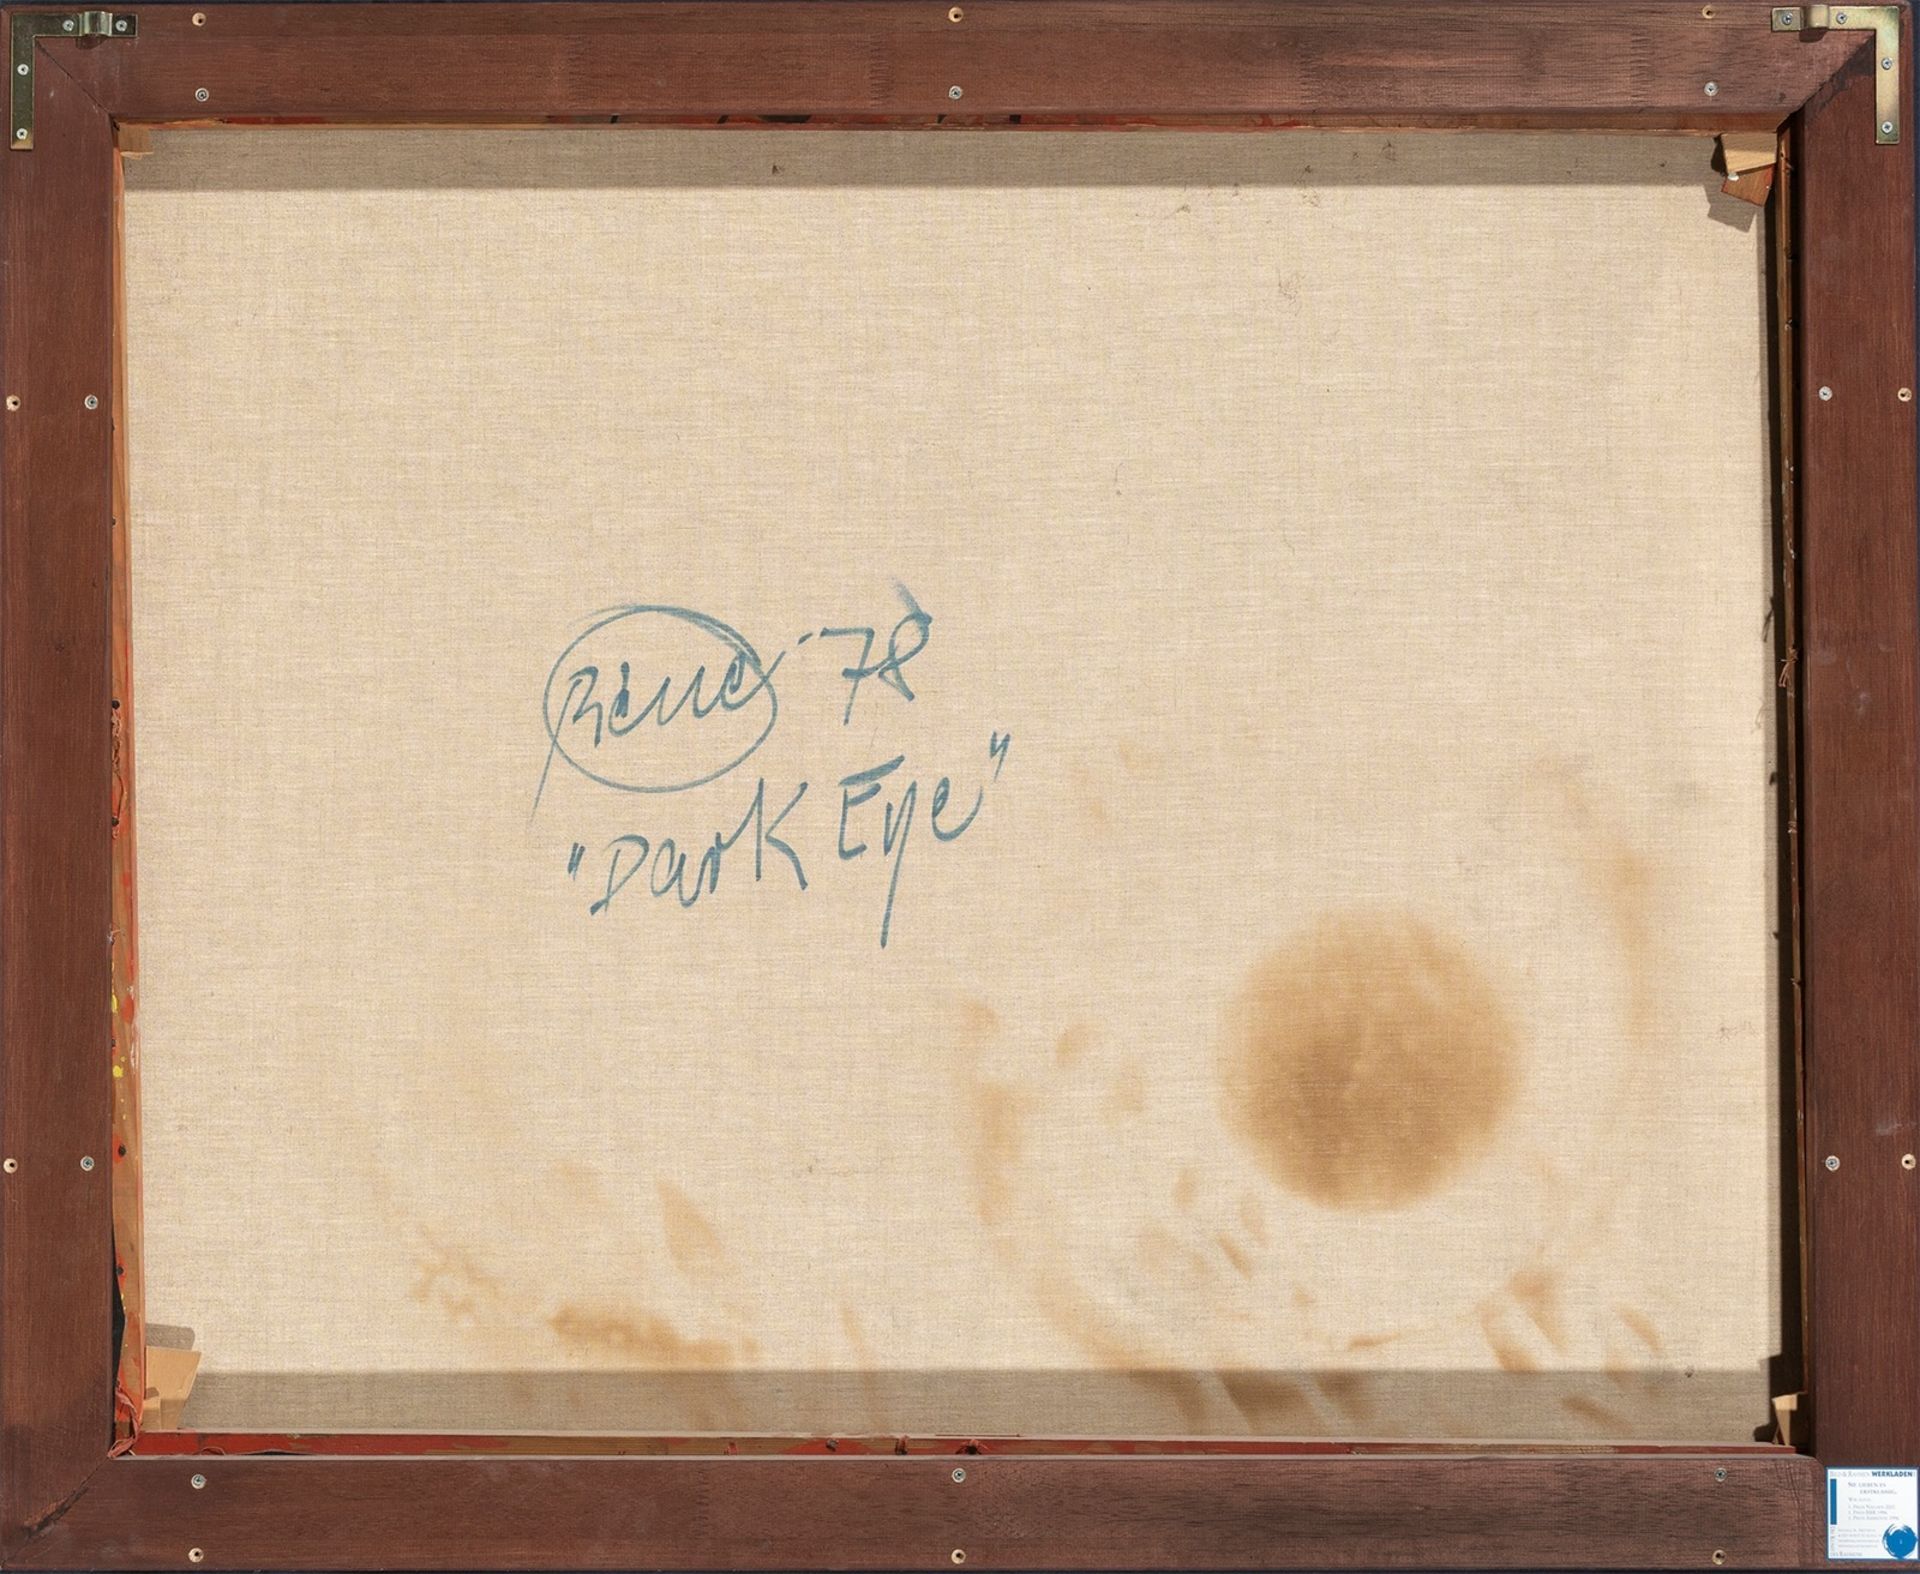 Otto Piene. ”Dark Eye”. 1978 - Image 2 of 2